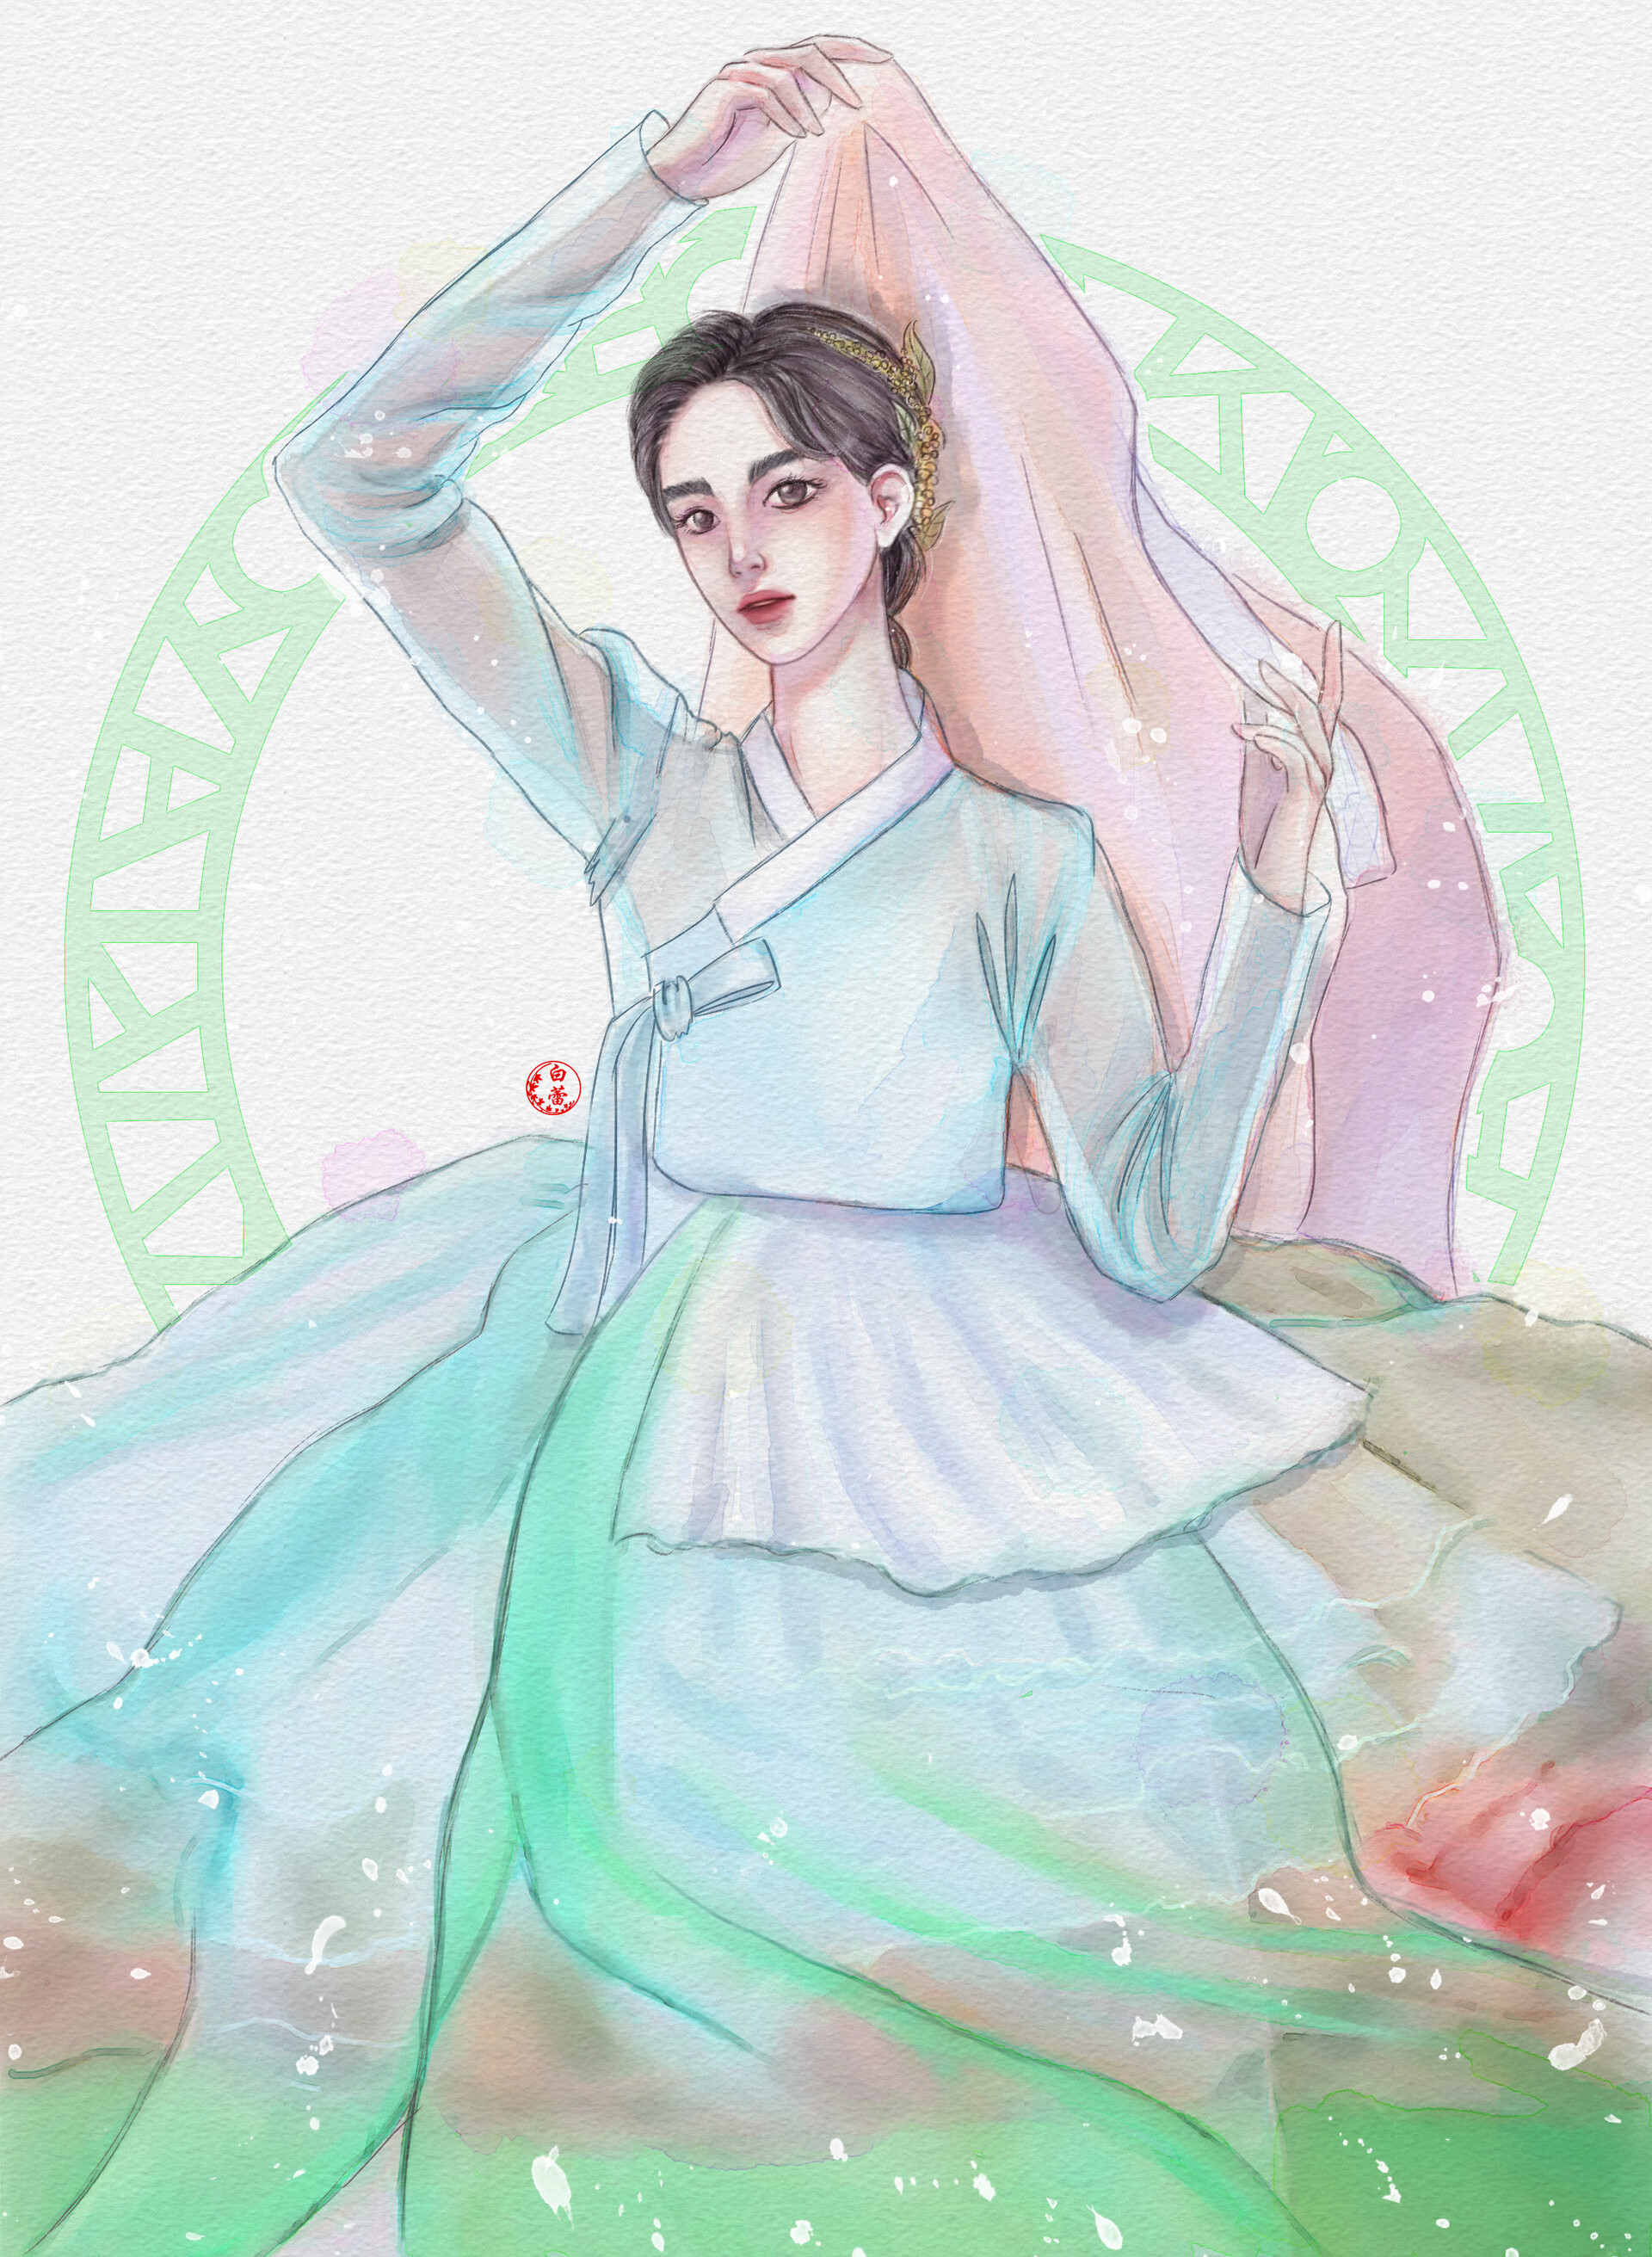 ArtStation - Girl in hanbok